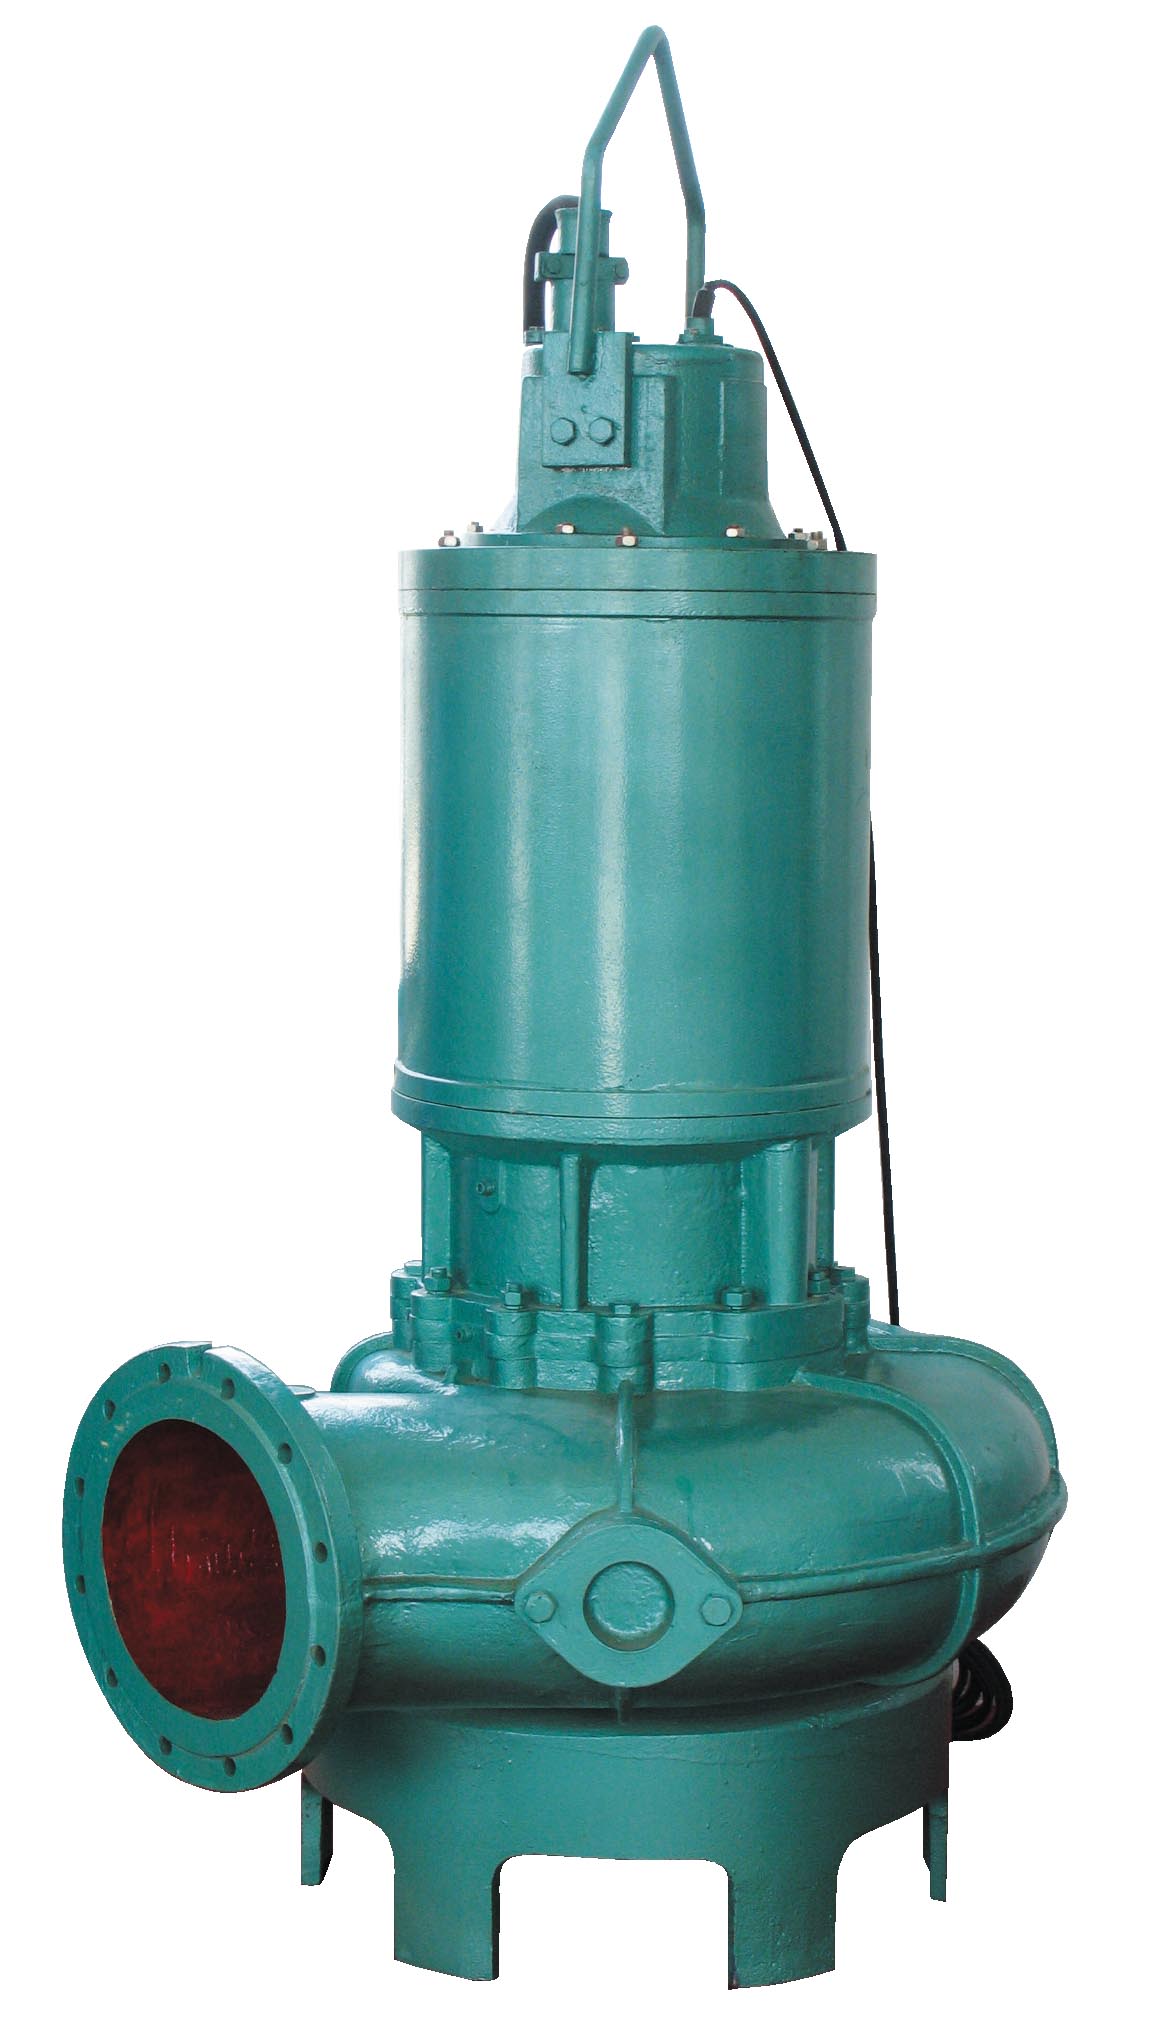 DG、GC型多级离心泵生产厂家-山东鲁源泵业有限公司